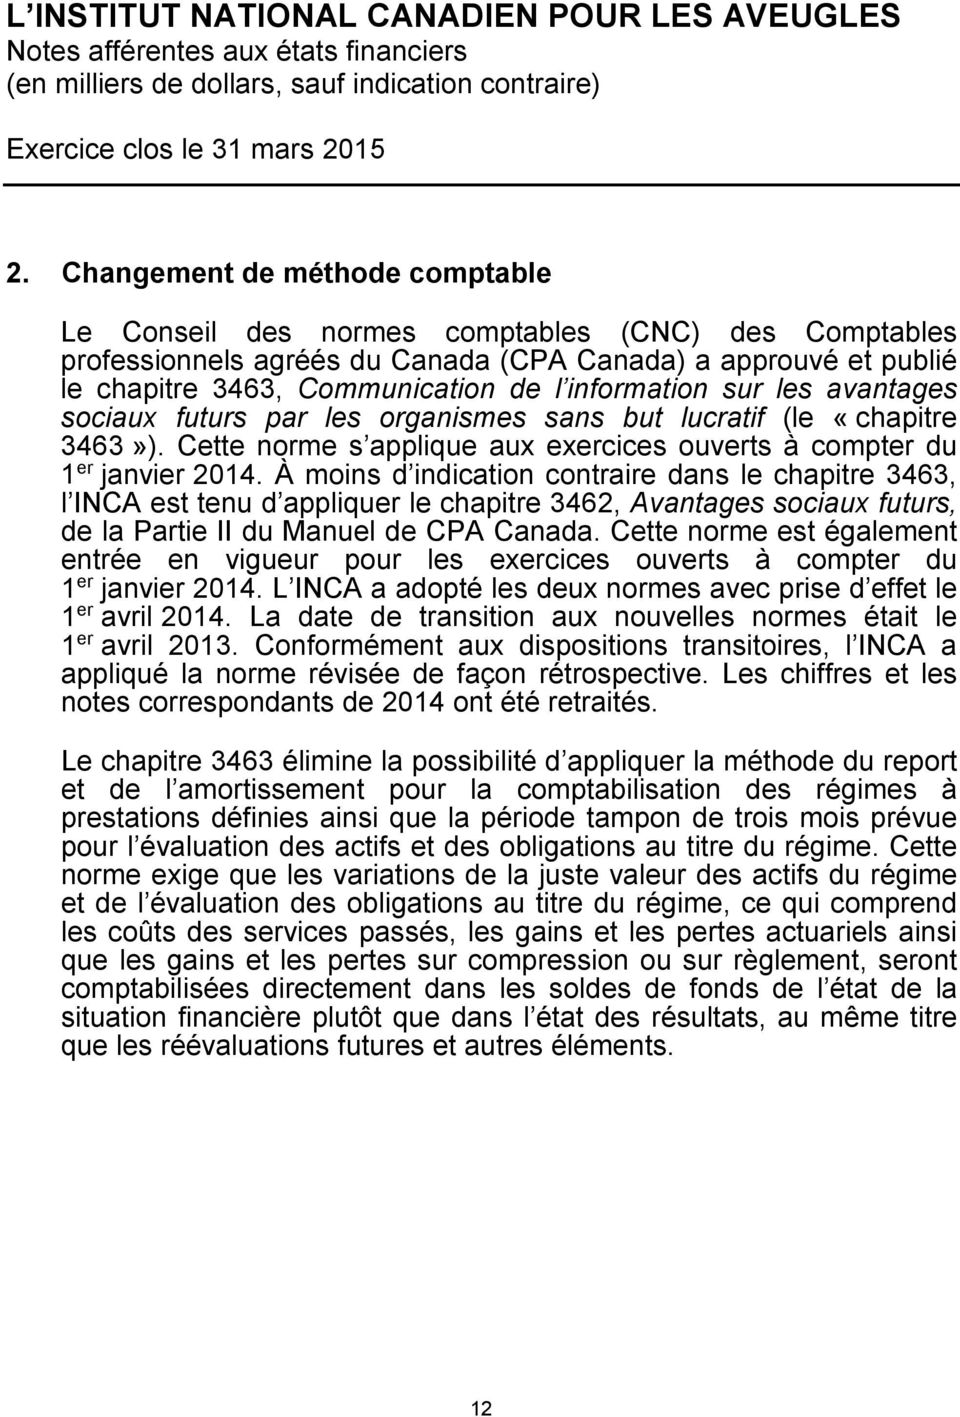 À moins d indication contraire dans le chapitre 3463, l INCA est tenu d appliquer le chapitre 3462, Avantages sociaux futurs, de la Partie II du Manuel de CPA Canada.